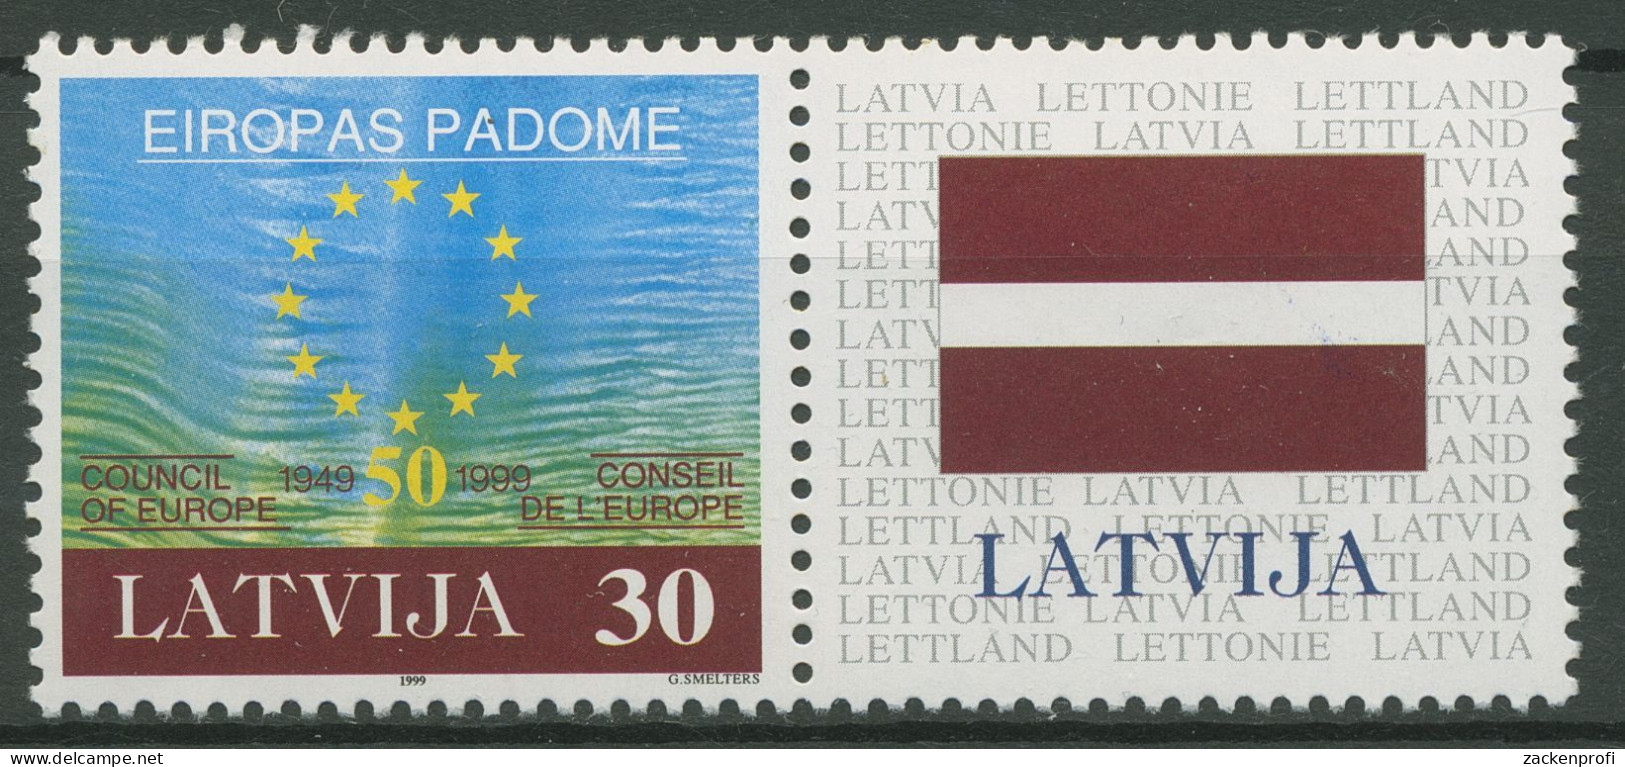 Lettland 1999 50 Jahre Europarat 500 Zf Postfrisch - Latvia